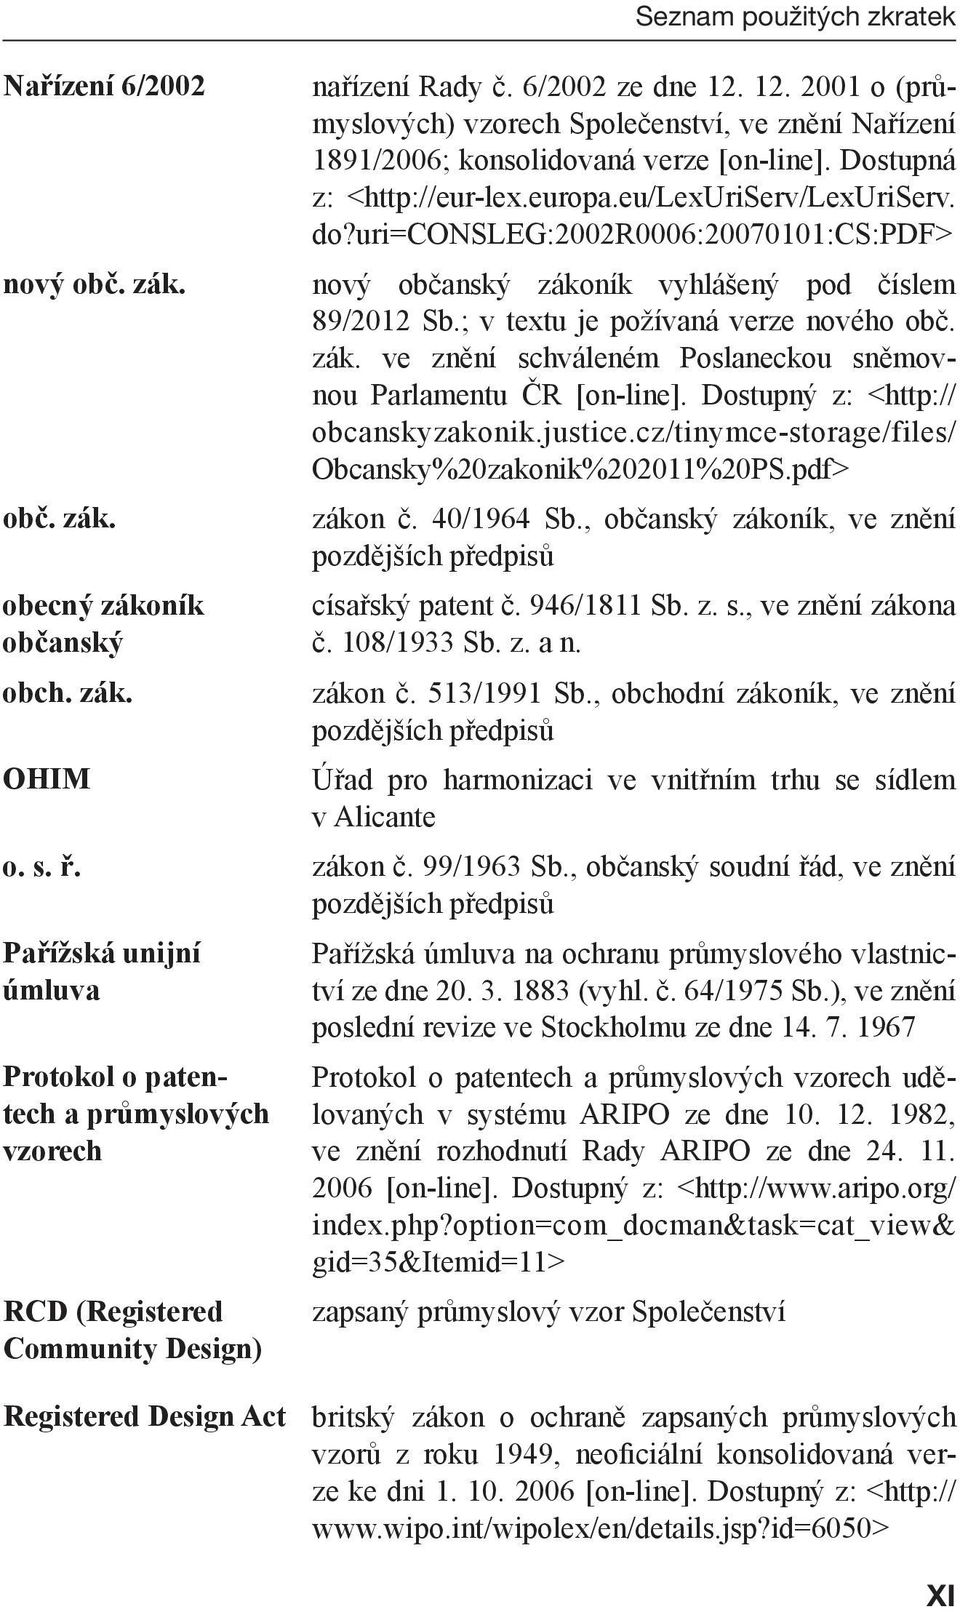 uri=consleg:2002r0006:20070101:cs:pdf> nový občanský zákoník vyhlášený pod číslem 89/2012 Sb.; v textu je požívaná verze nového obč. zák. ve znění schváleném Poslaneckou sněmovnou Parlamentu ČR [on-line].